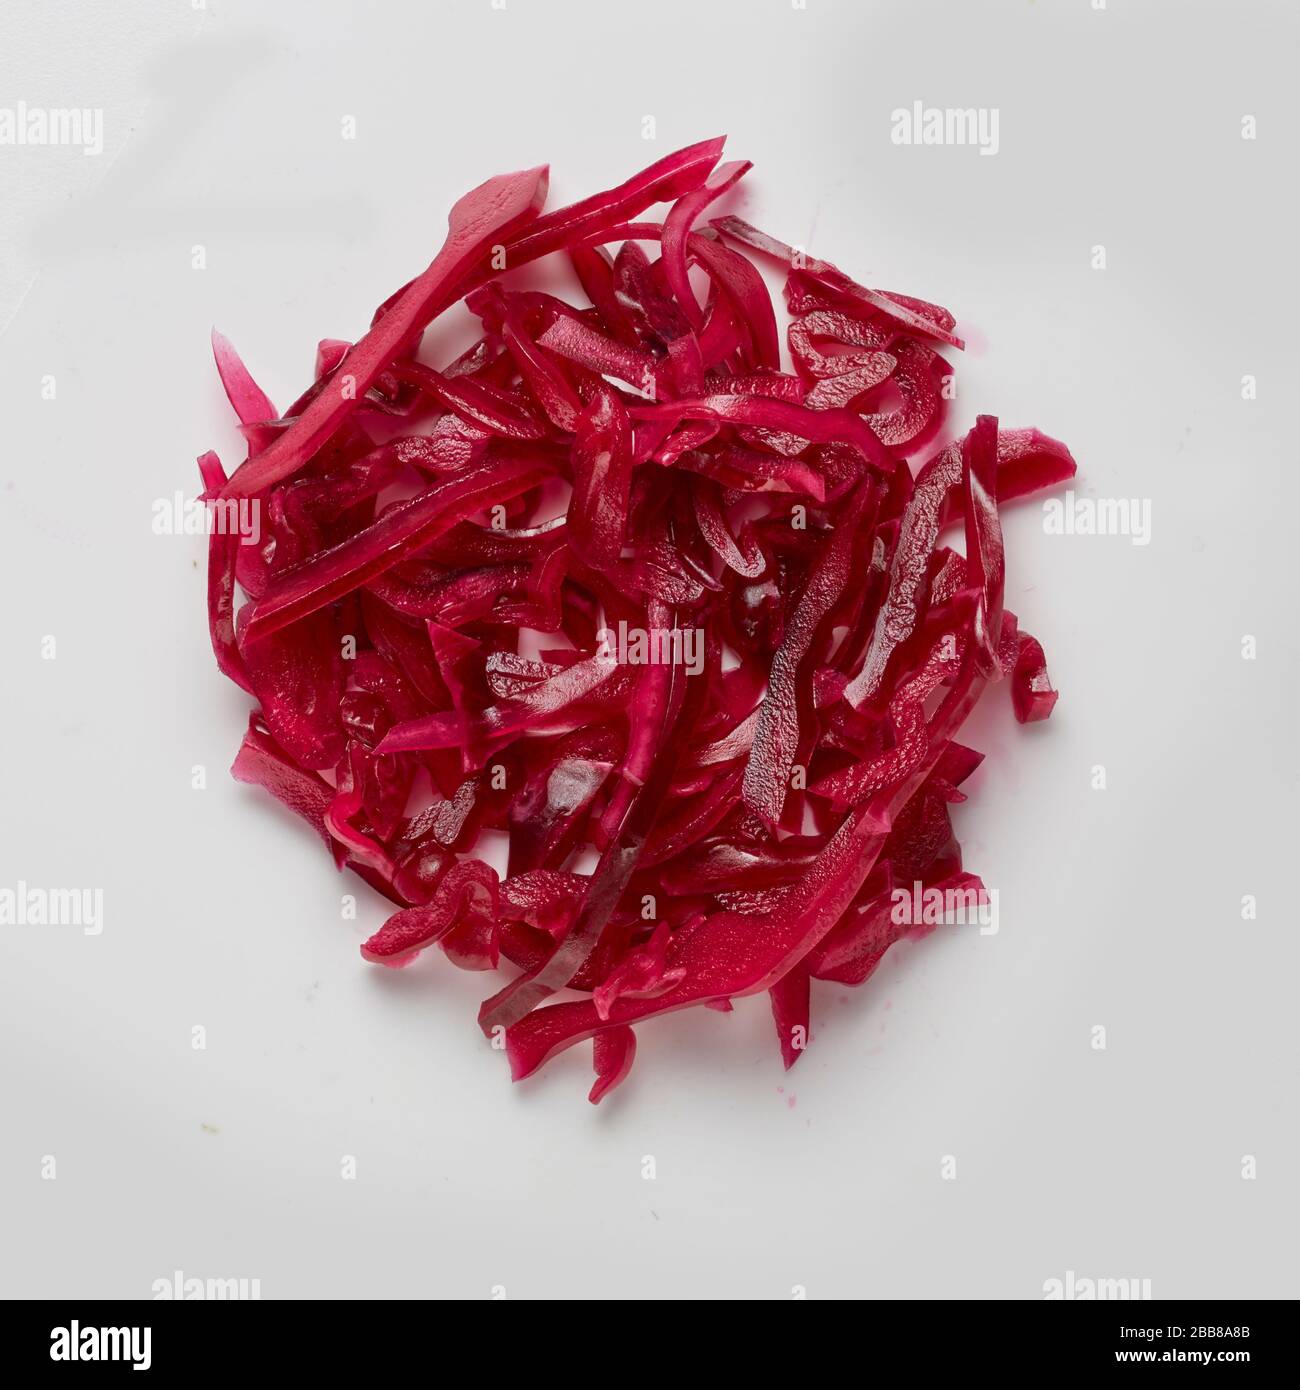 cavolo rosso cotto dieta vegetariana porzione di cibo preparata campione di verdure rotonde Foto Stock